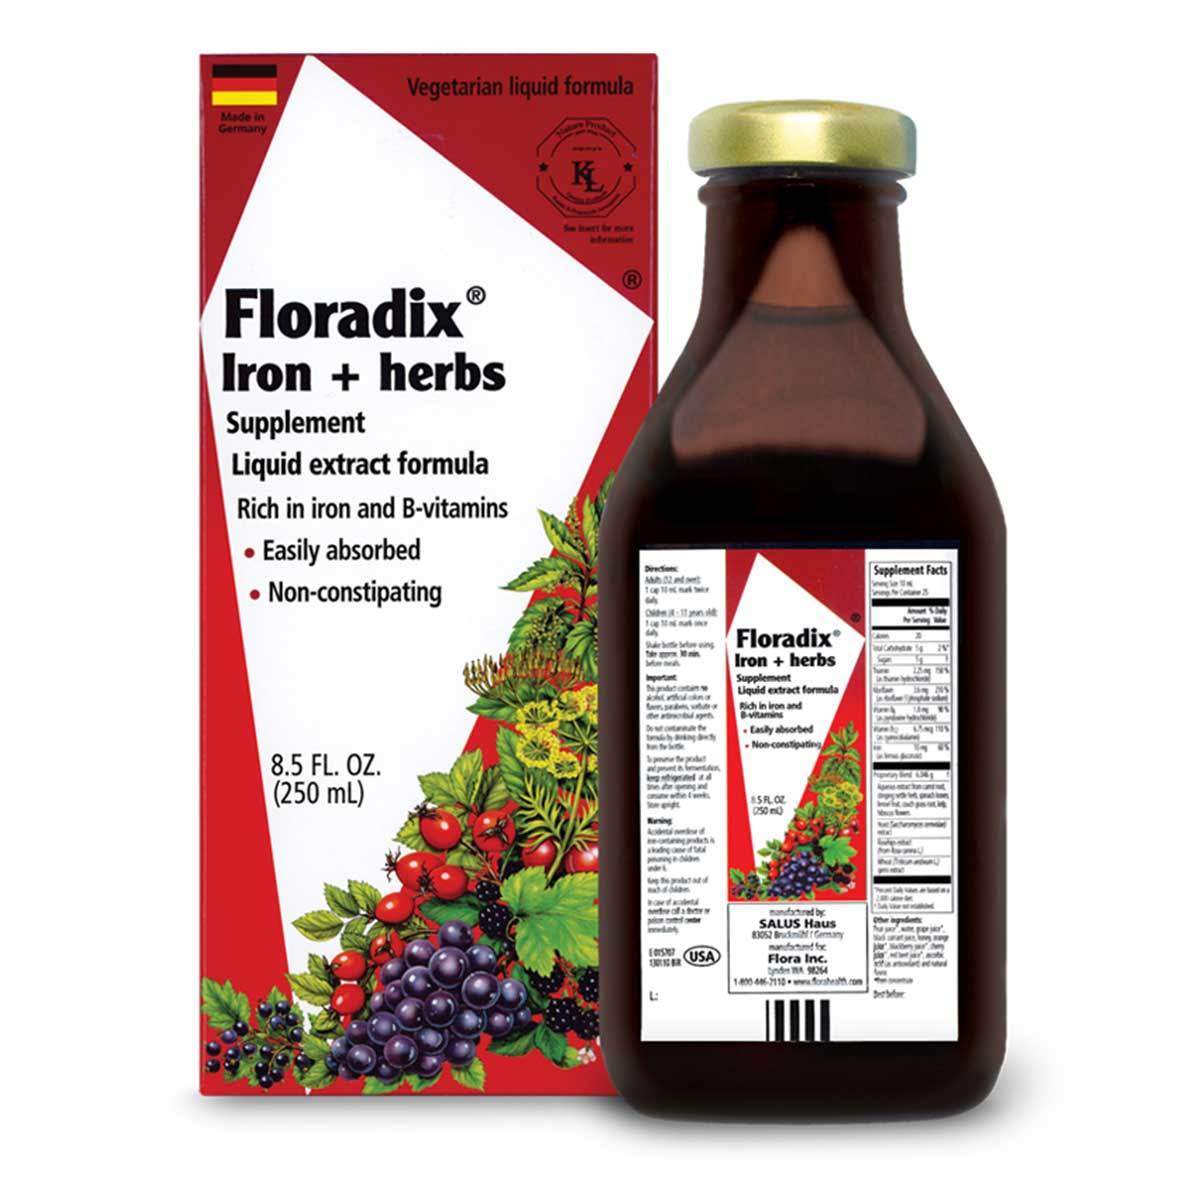 Primary image of Floradix Iron + Herbs